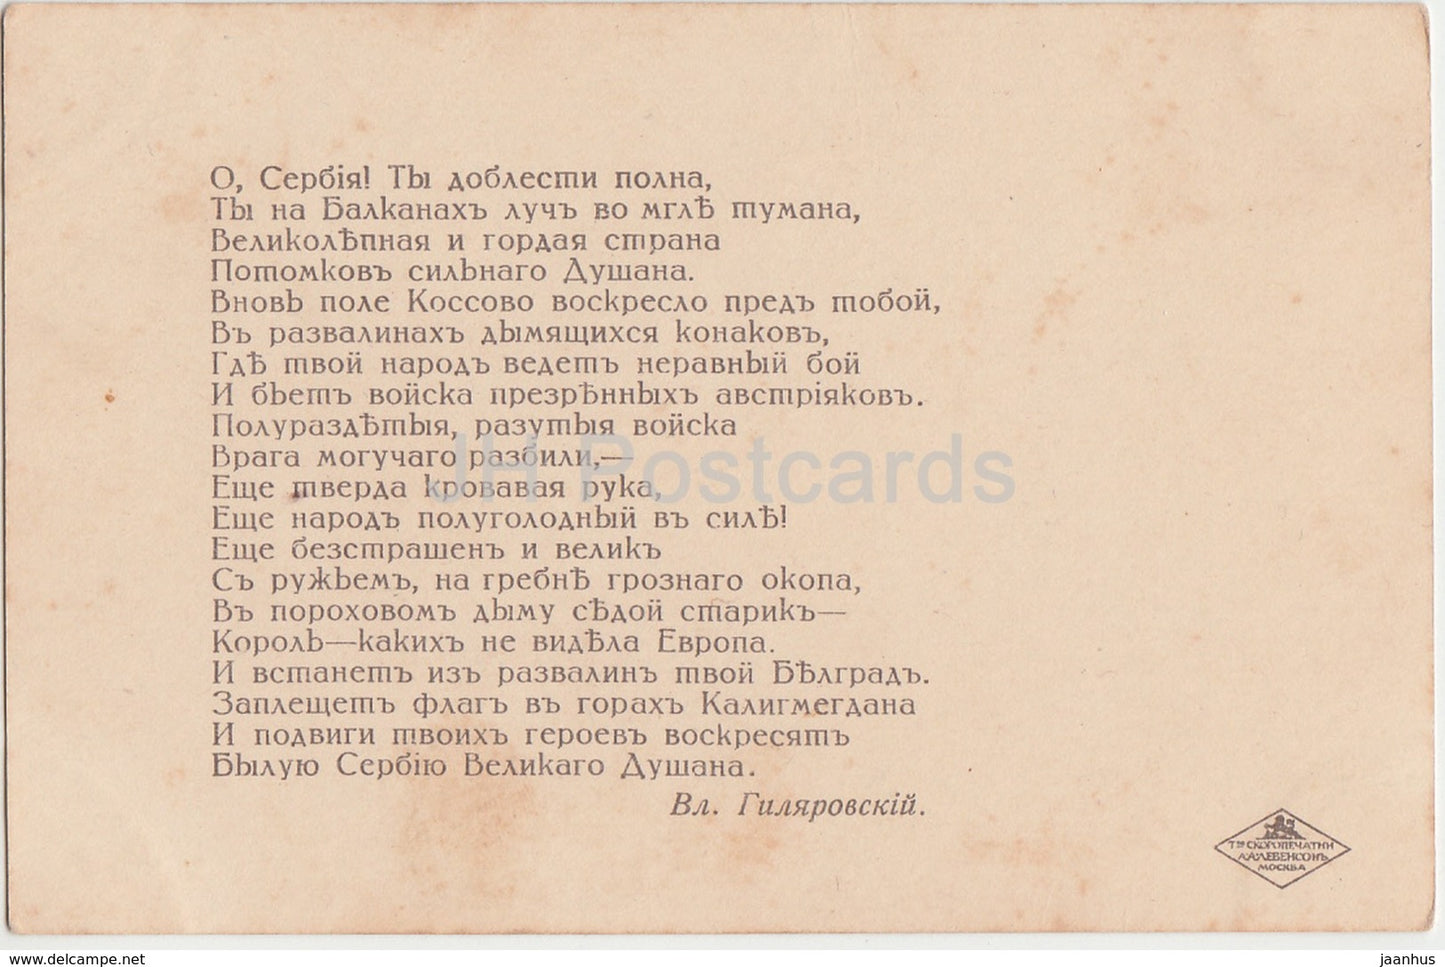 Text von V. Gilyarovsky – Russland und Serbien zusammen – Wohltätigkeit – Wappen – alte Postkarte – Kaiserliches Russland – unbenutzt